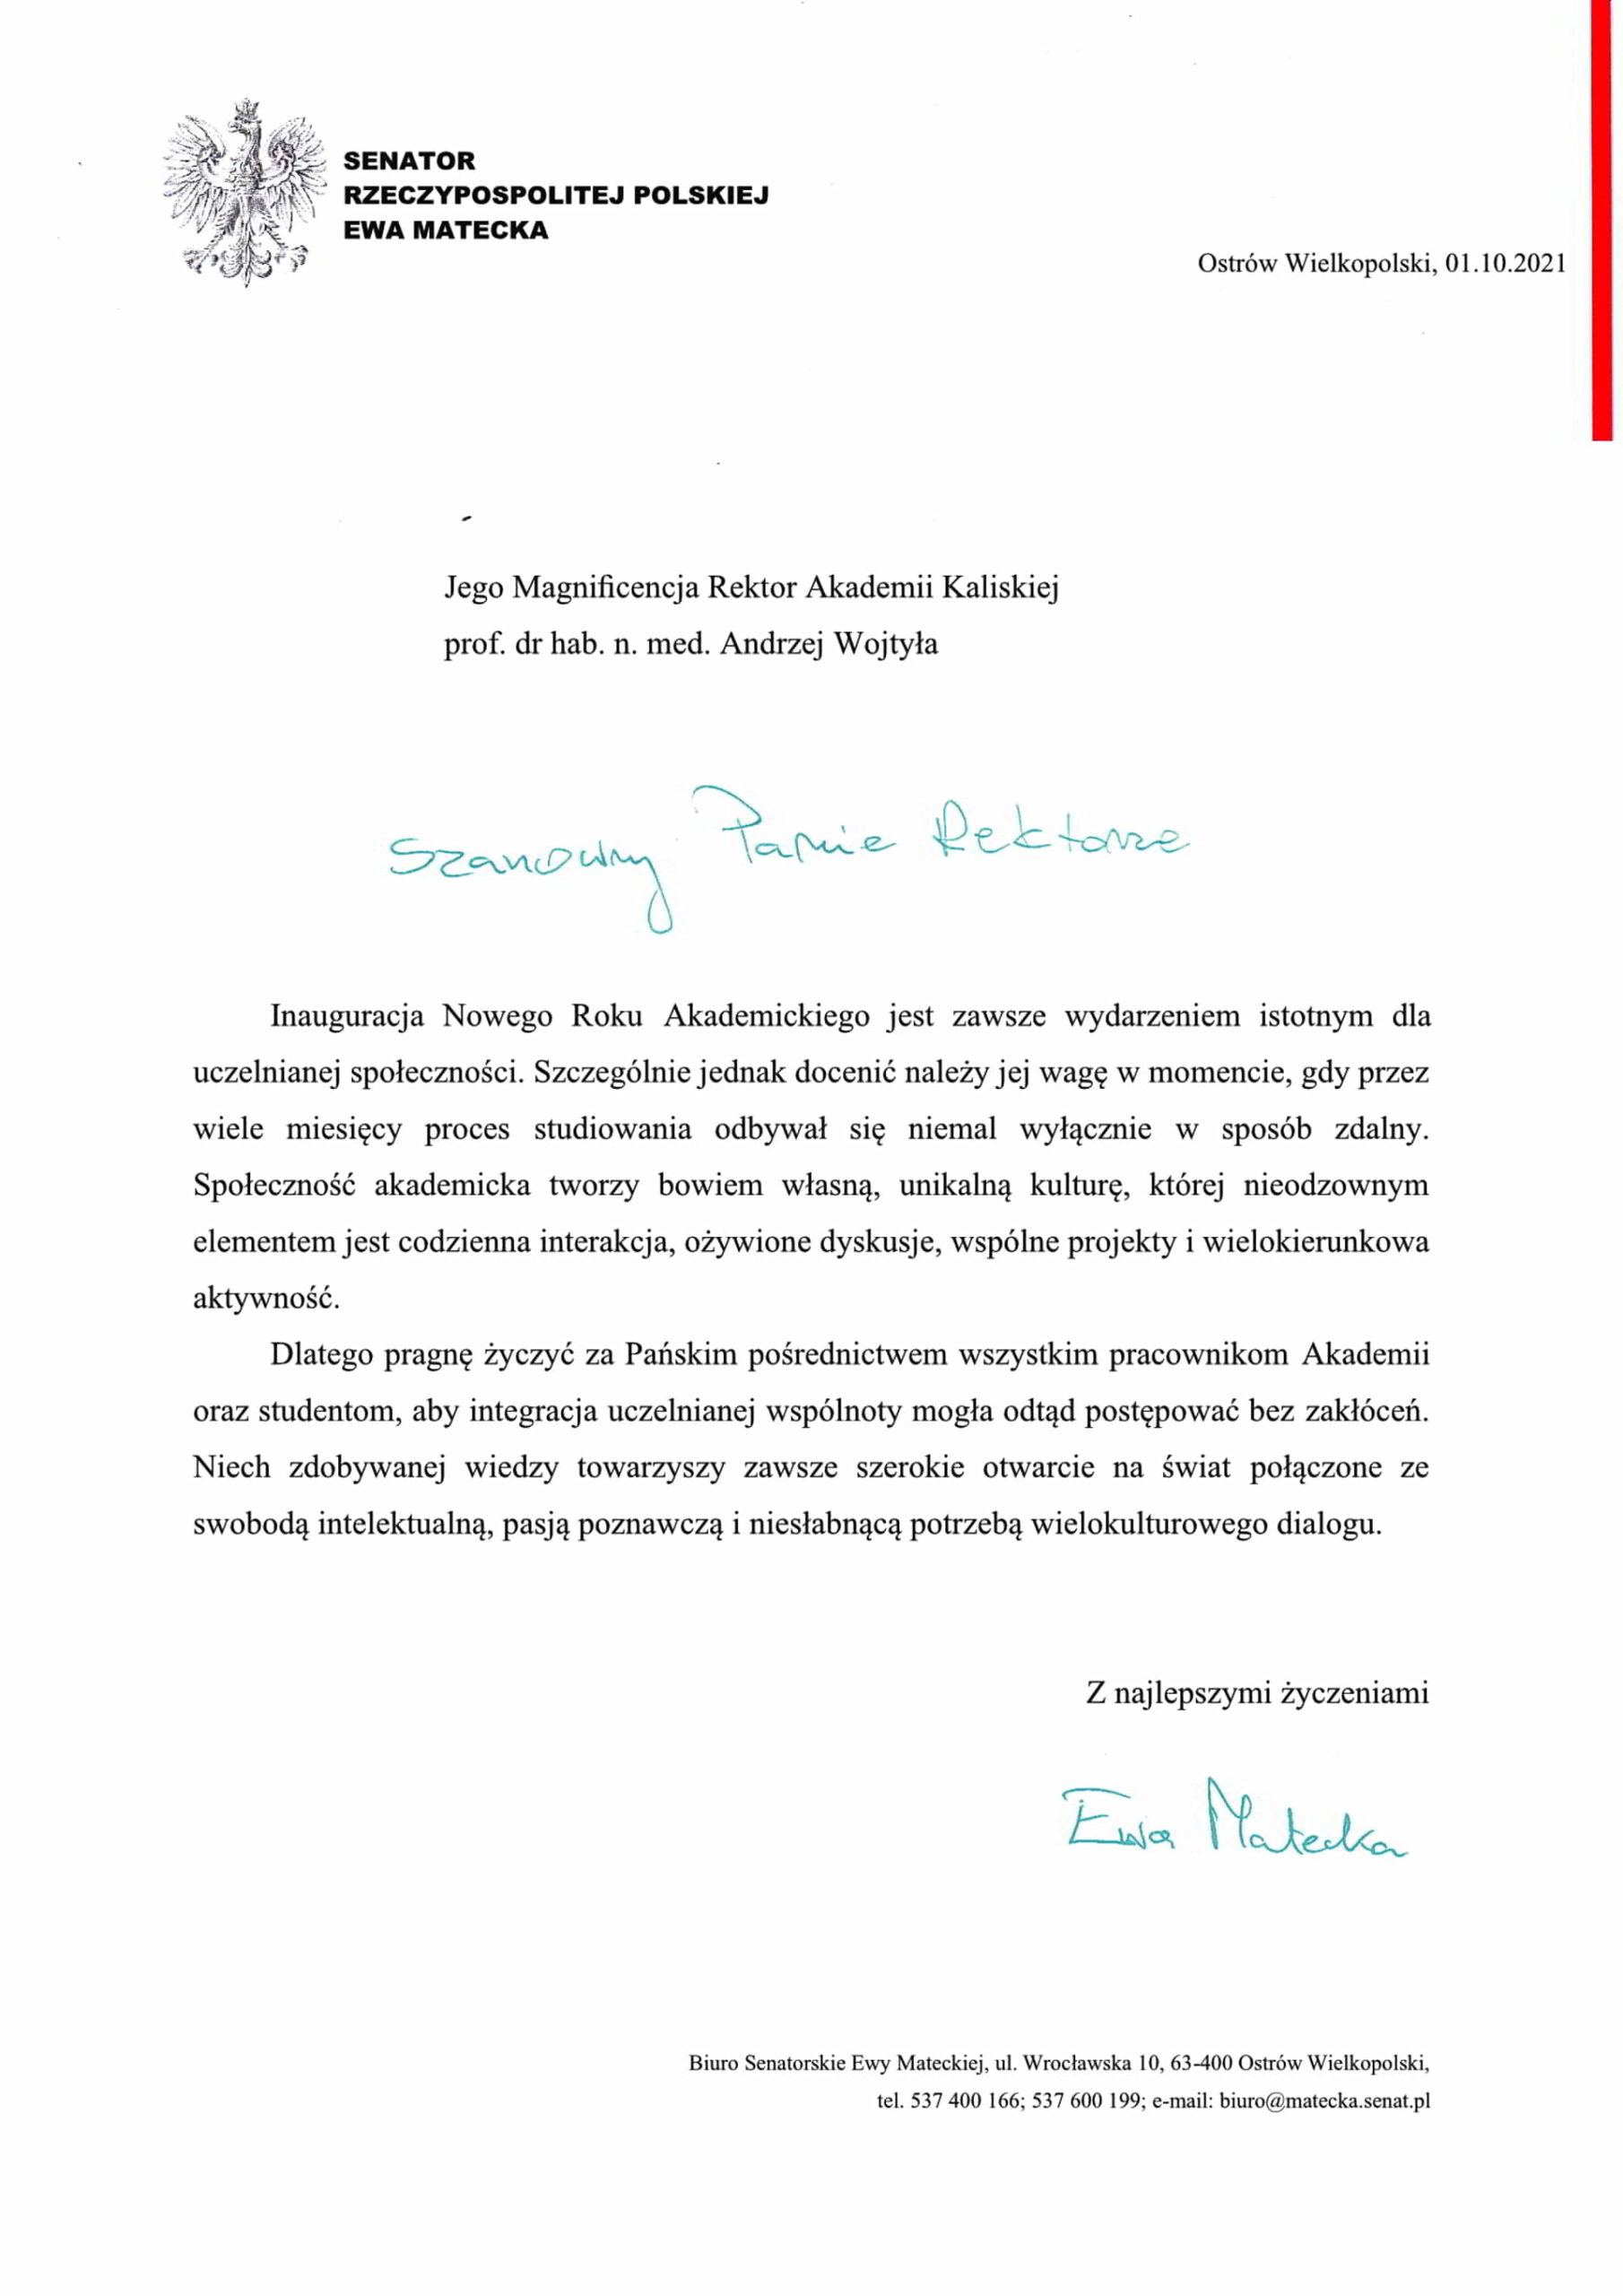 życzenia inauguracja roku akademickiego 2021/2022 Senator Rzeczypospolitej Polskiej